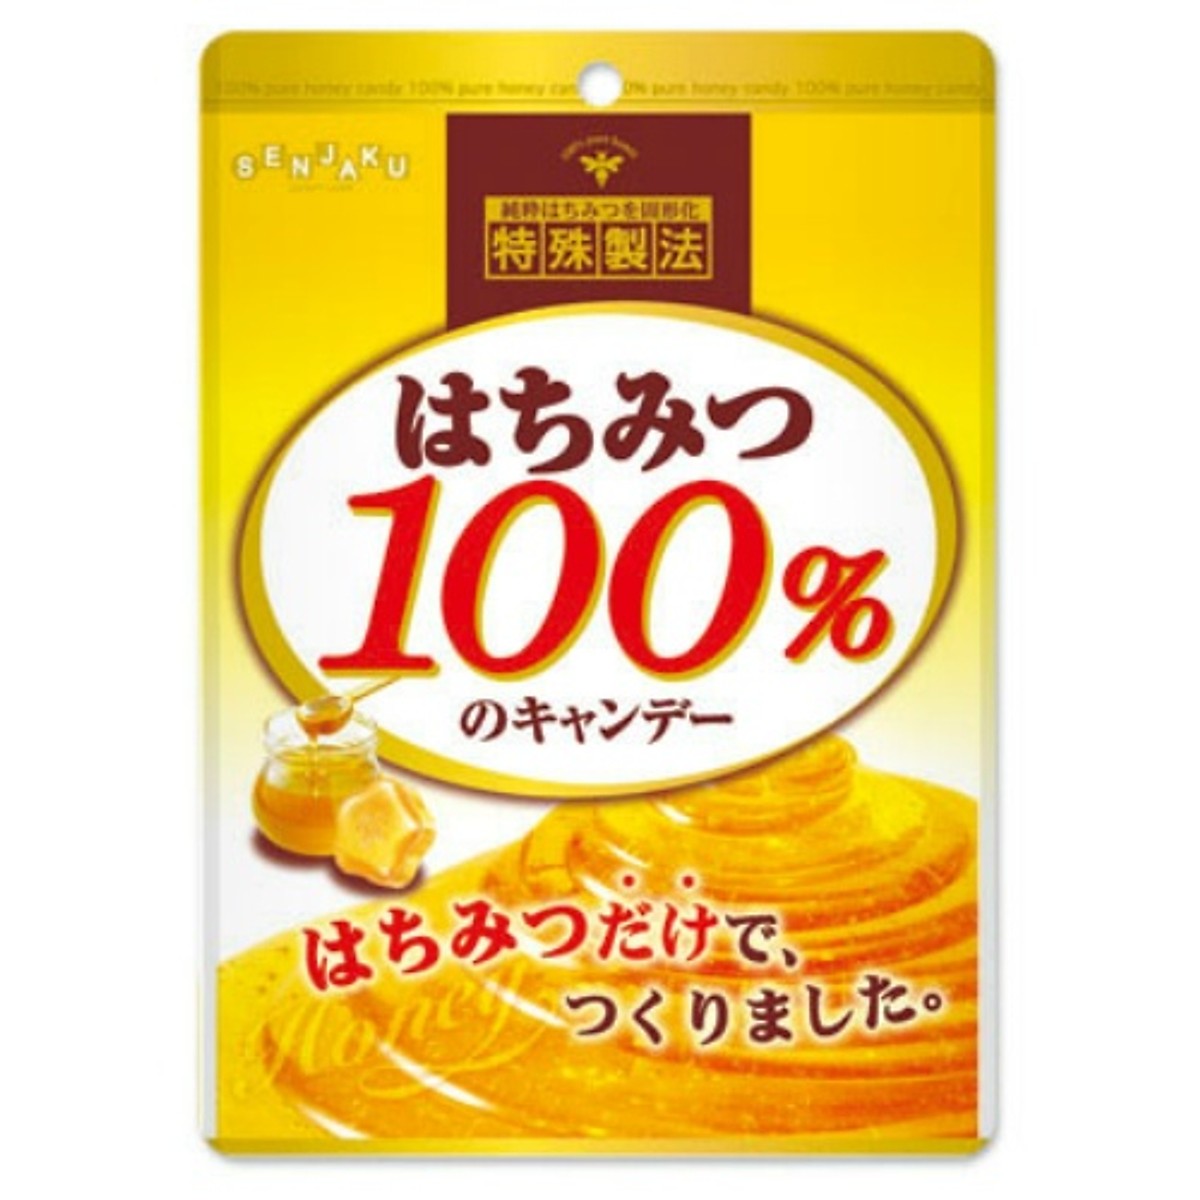 Giấm đen hỗ trợ giảm cân Orihiro Nhật Bản 216 viên -  tặng kẹo mật ong SENJAKU 